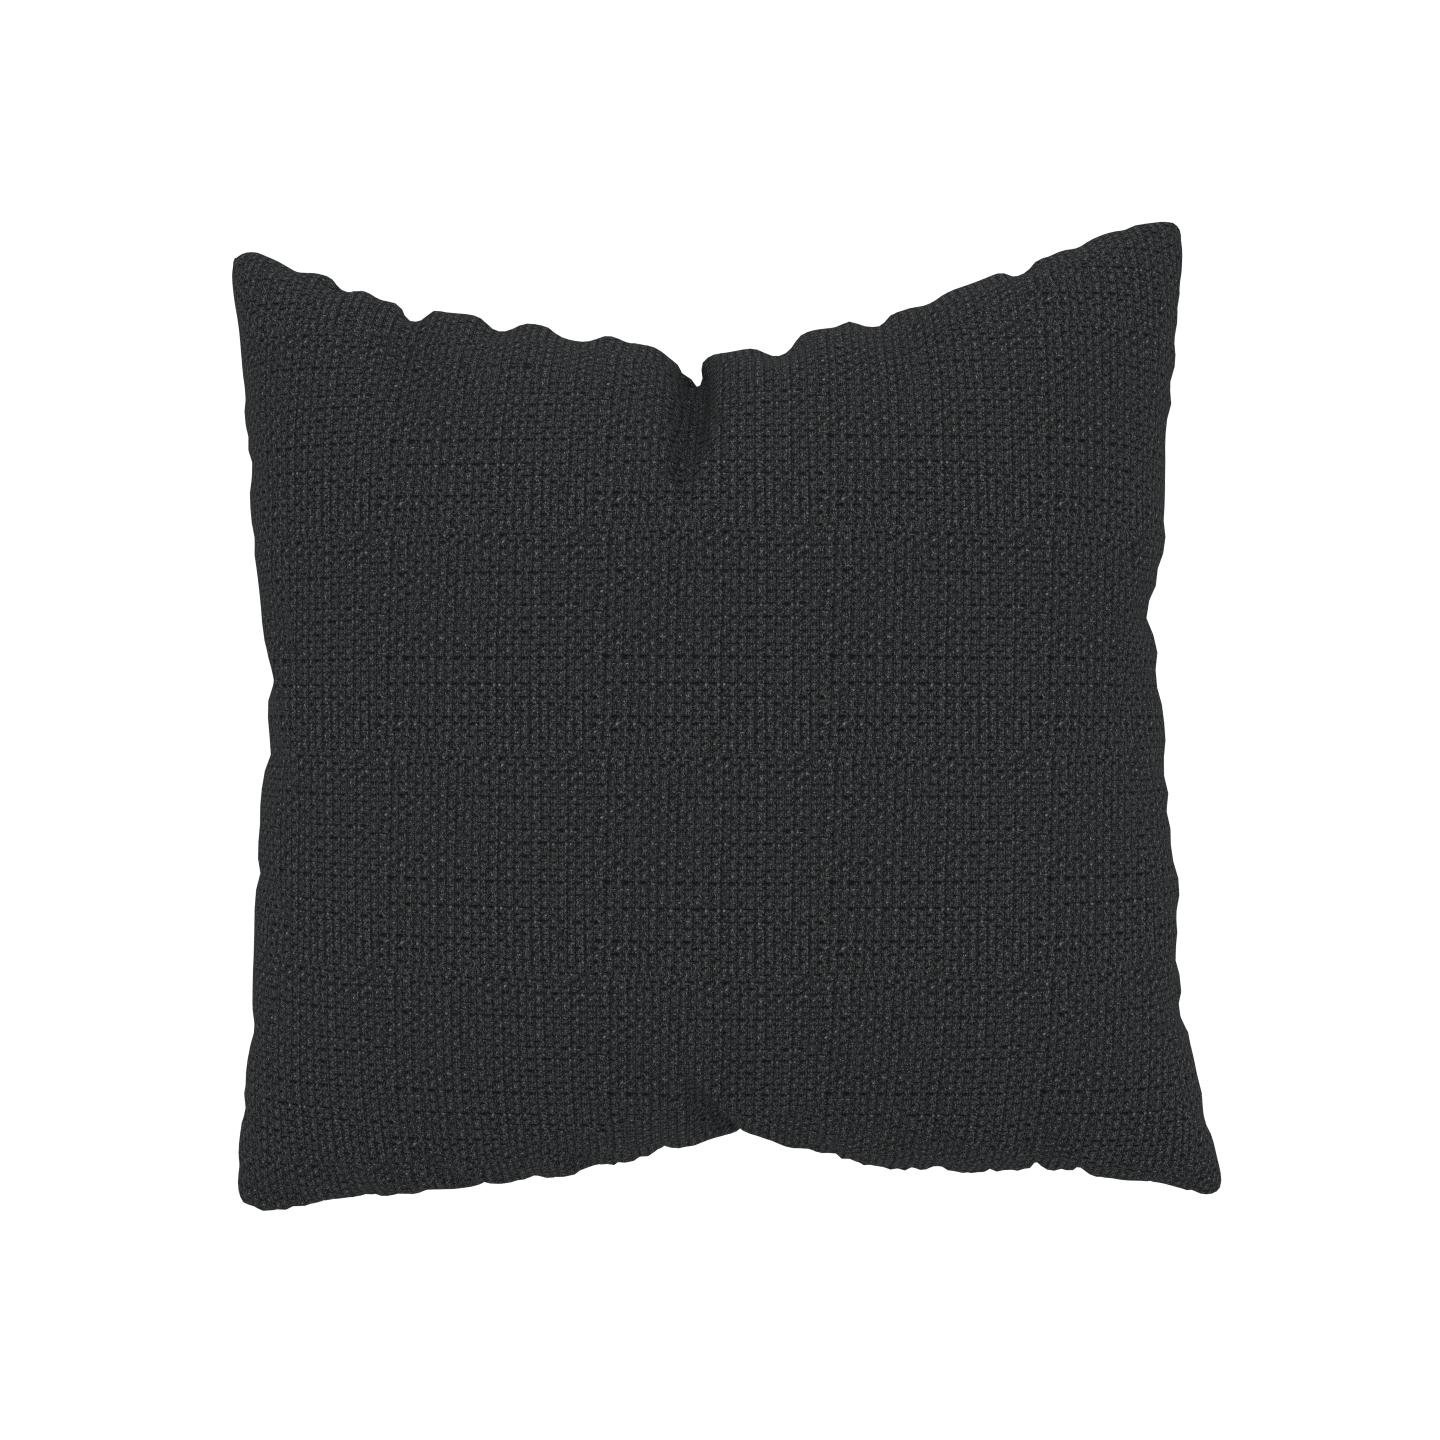 MYCS Coussin Noir Nuit - 50x50 cm - Housse en Tissu grossier. Coussin de canapé moelleux